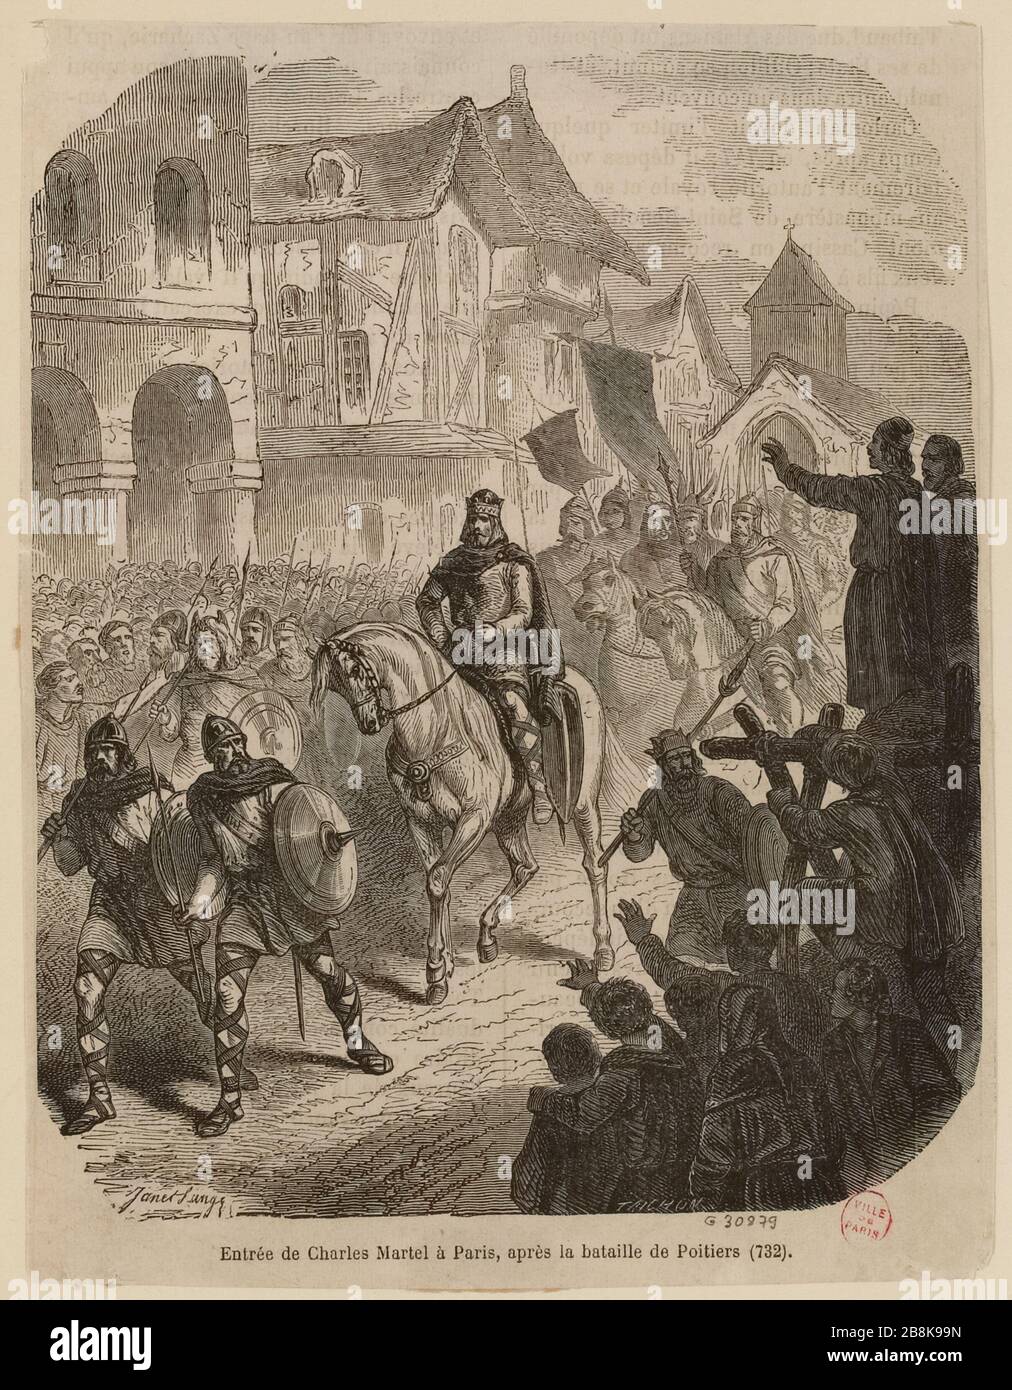 Charles Martel entrò a Parigi dopo la battaglia di Poitiers (732) (IT) Foto Stock